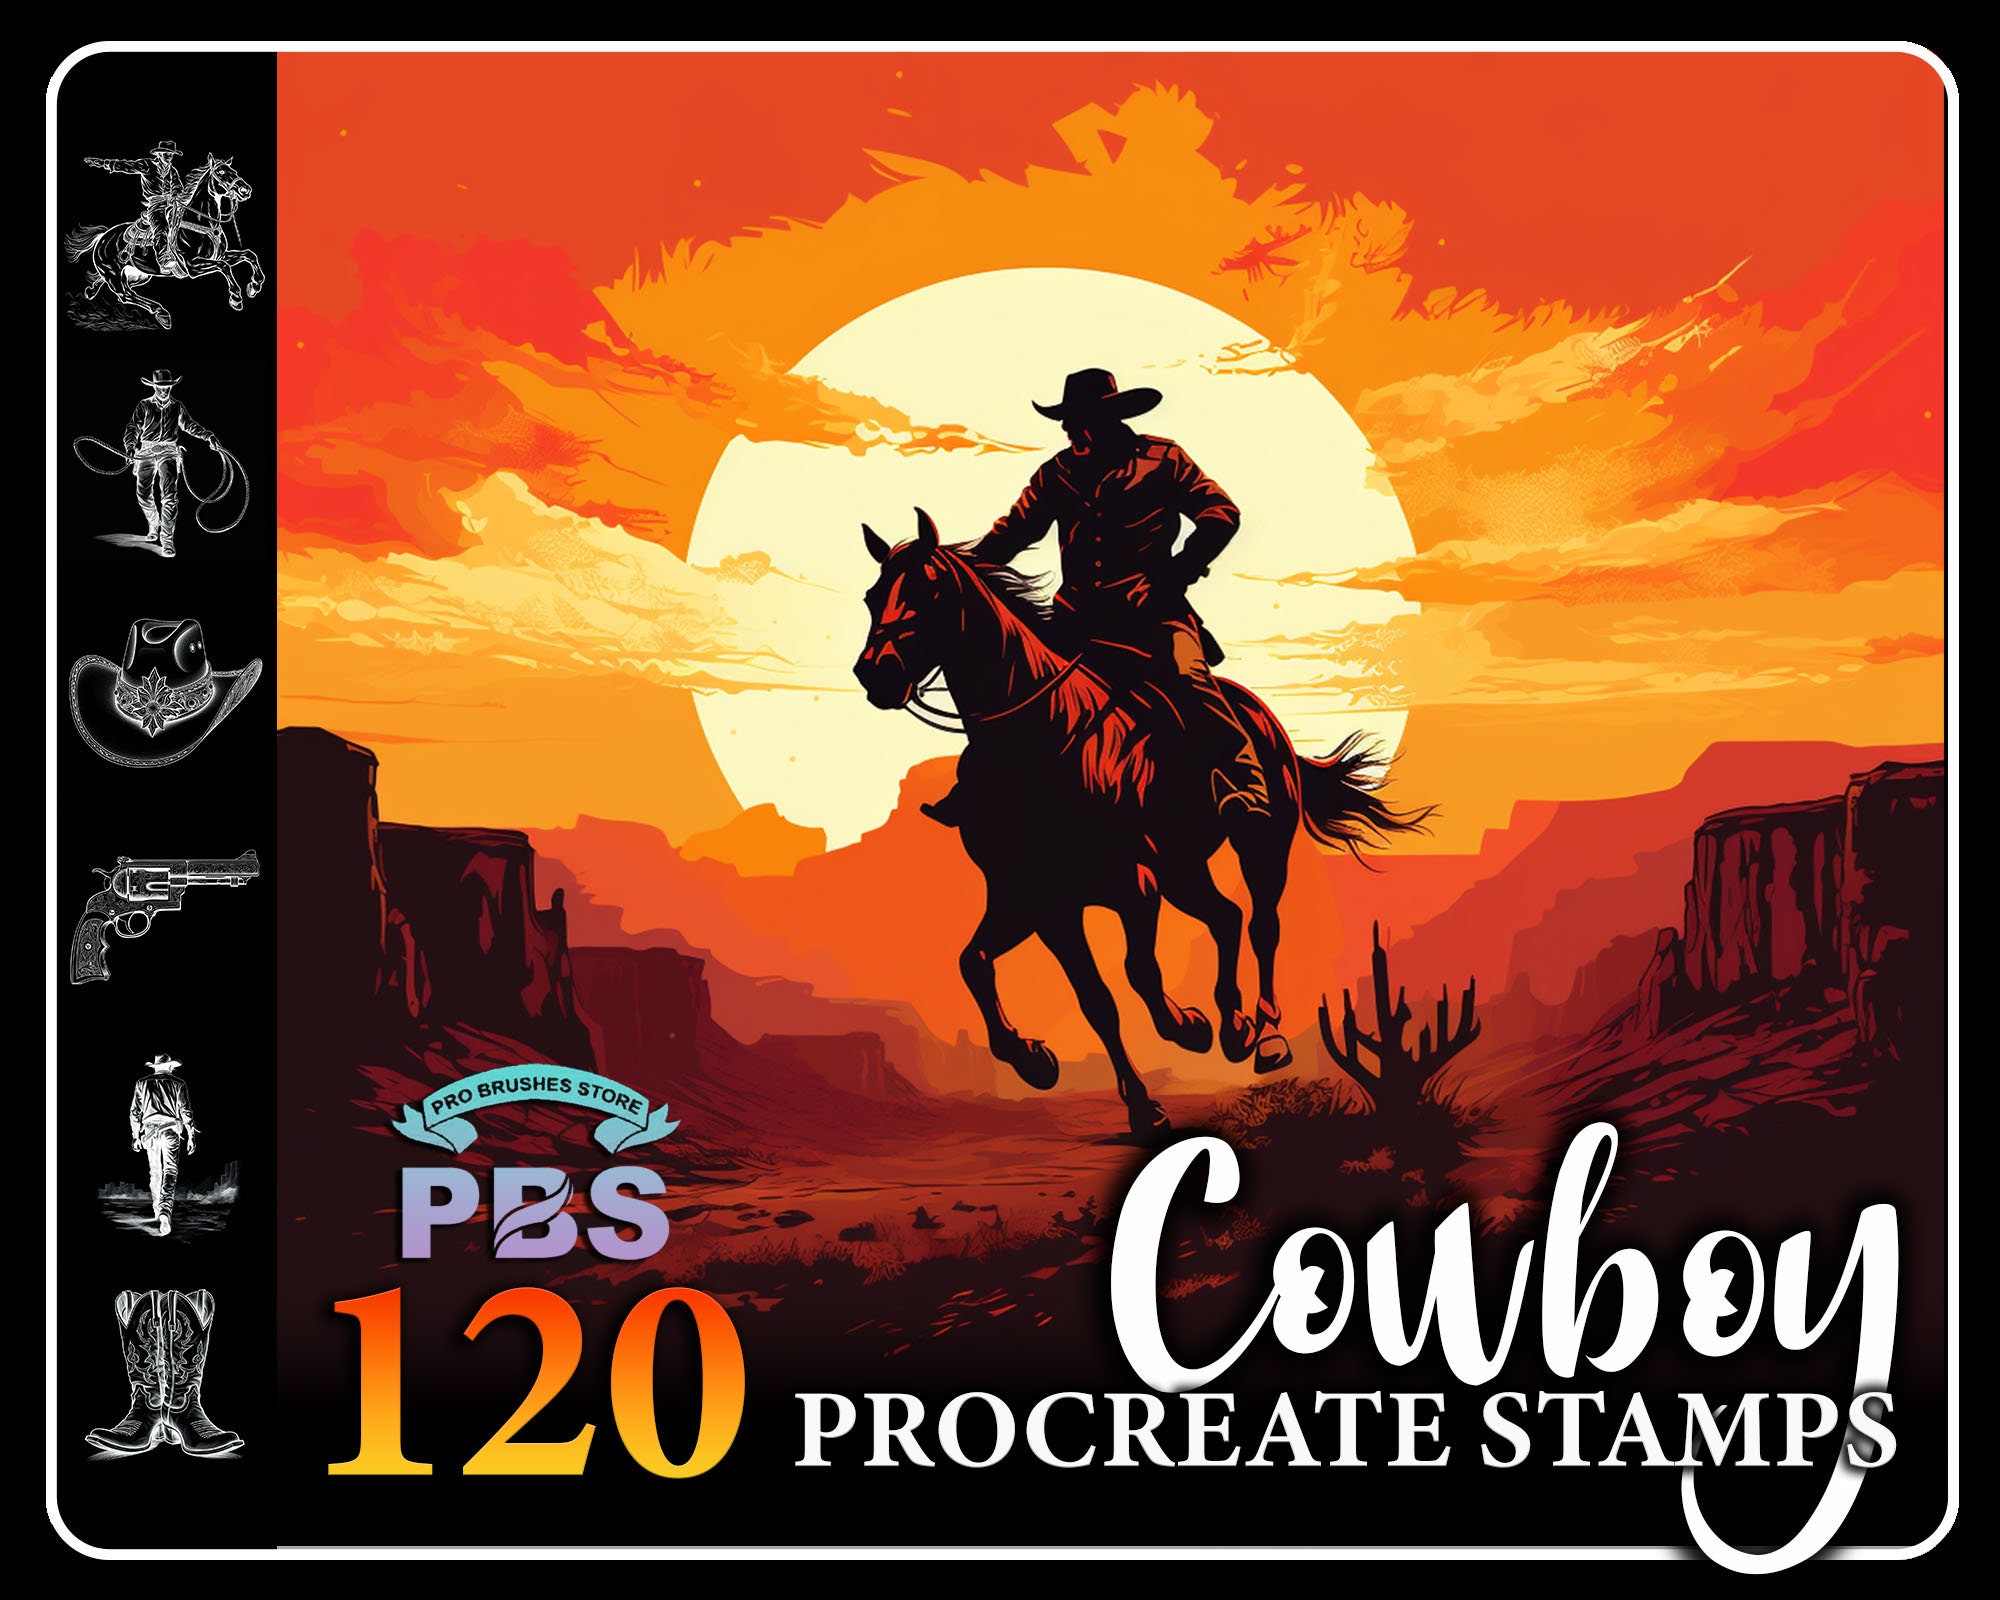 Wild West Stamp Set, Cowboy Stamps, Western Stamps, Wild West